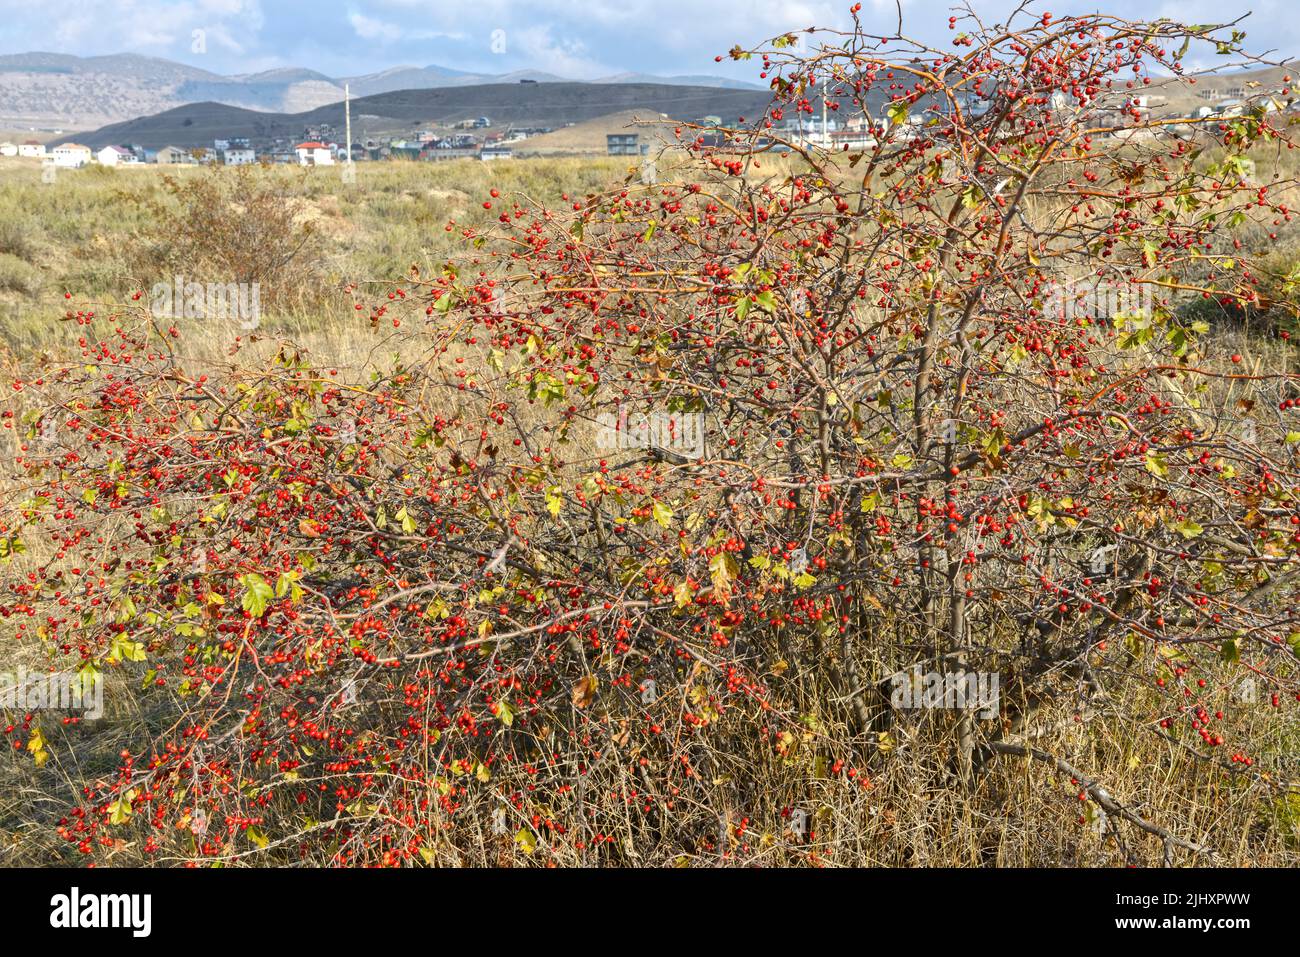 Vue panoramique avec buisson de l'aubépine dans la réserve naturelle de la vallée de Kapsel près de Sudak emplacement, Crimée, Russie. Banque D'Images